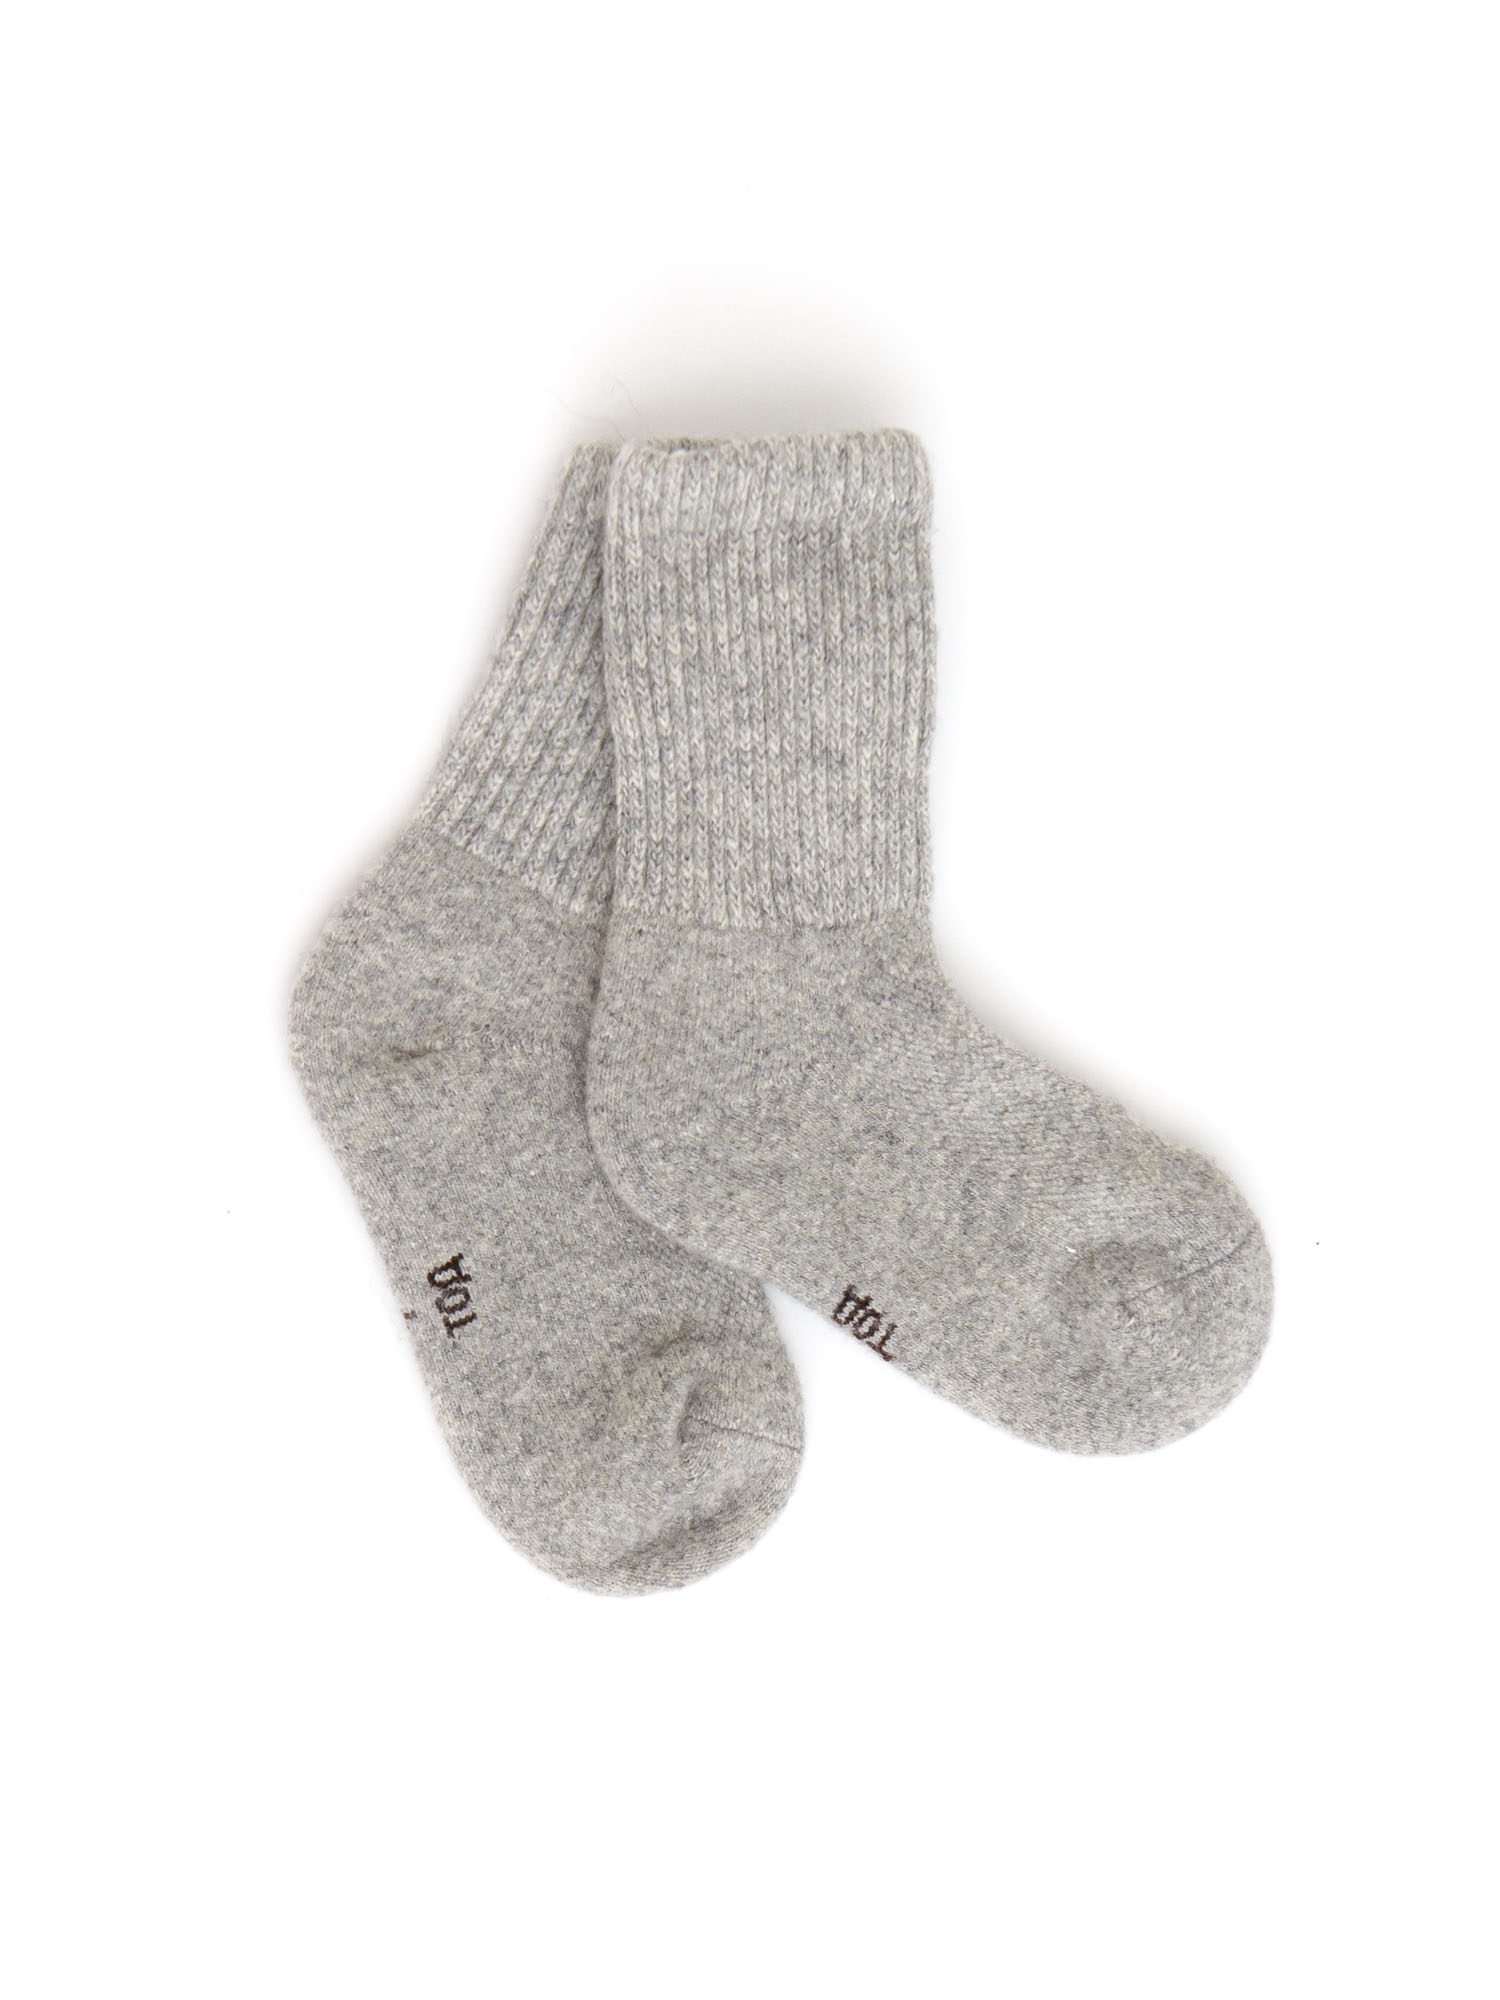 Детские носки из монгольской шерсти 3с ТОД ОЙМС ХХК, цвет серый, размер 3 (14-16 см) - фото 1